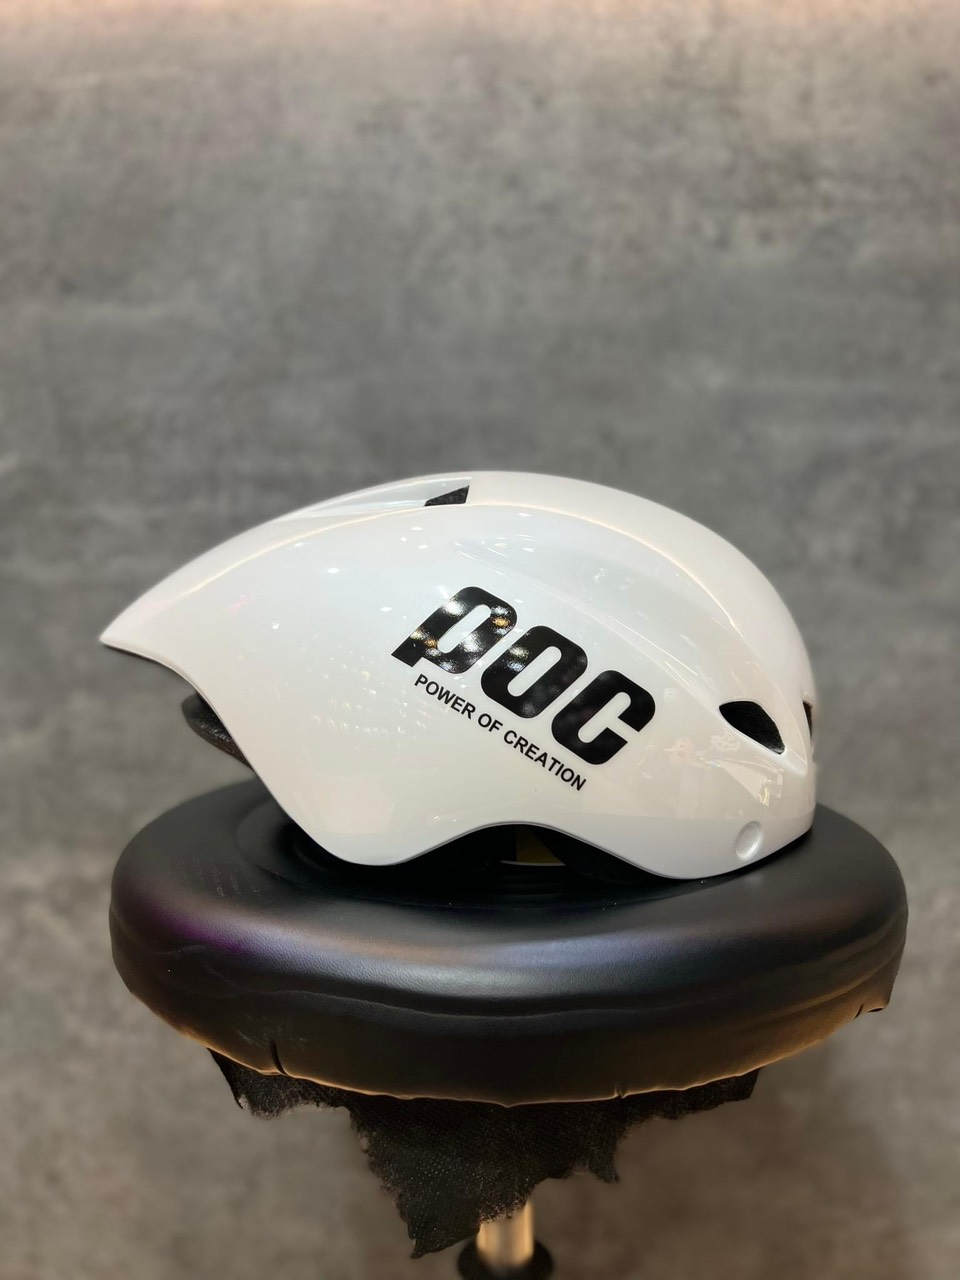 Mũ bảo hiểm xe đạp POC 01 - Nón thể thao đi phố cao cấp